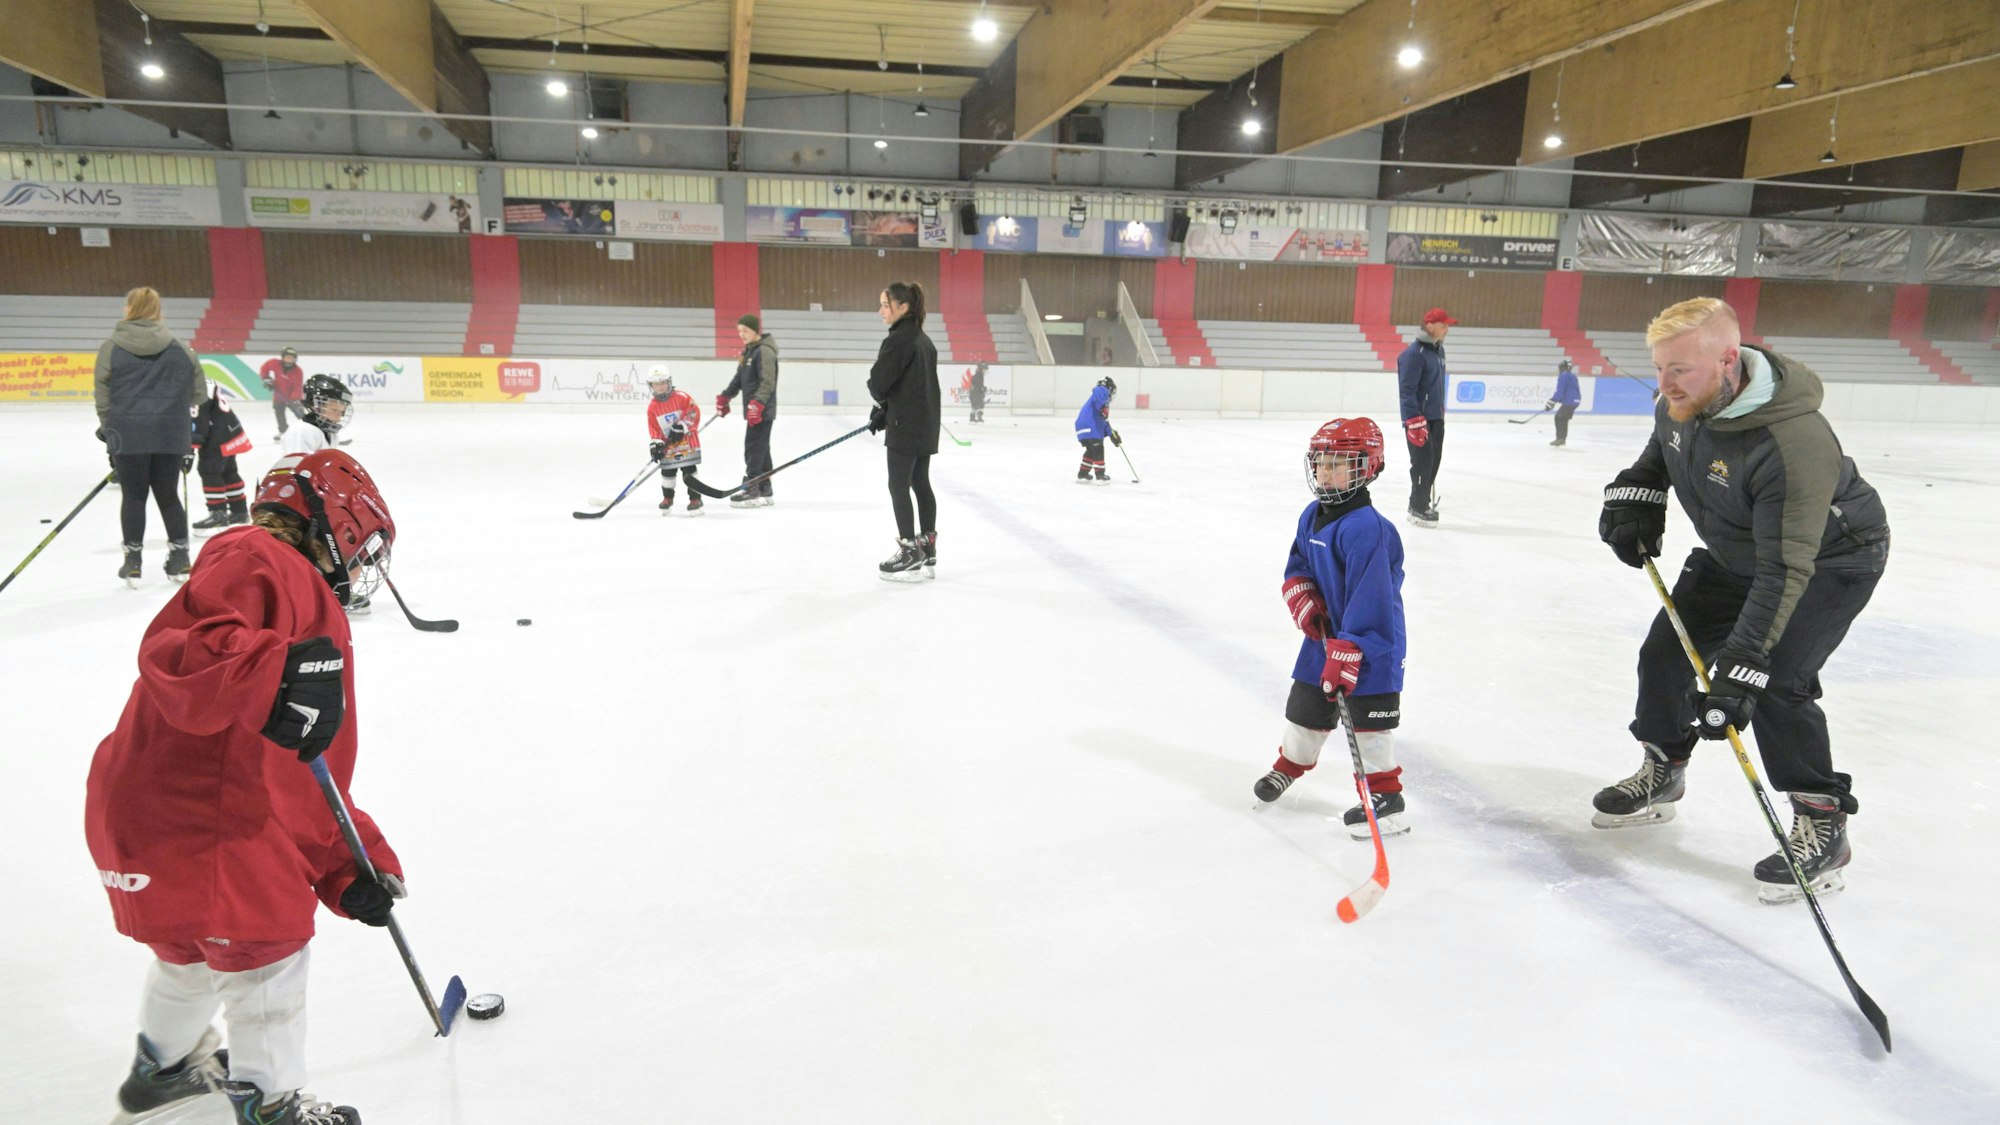 Auf dem Eis in der Halle trainiert eine Kinder-Eishockey-Mannschaft mit ihren Trainern.